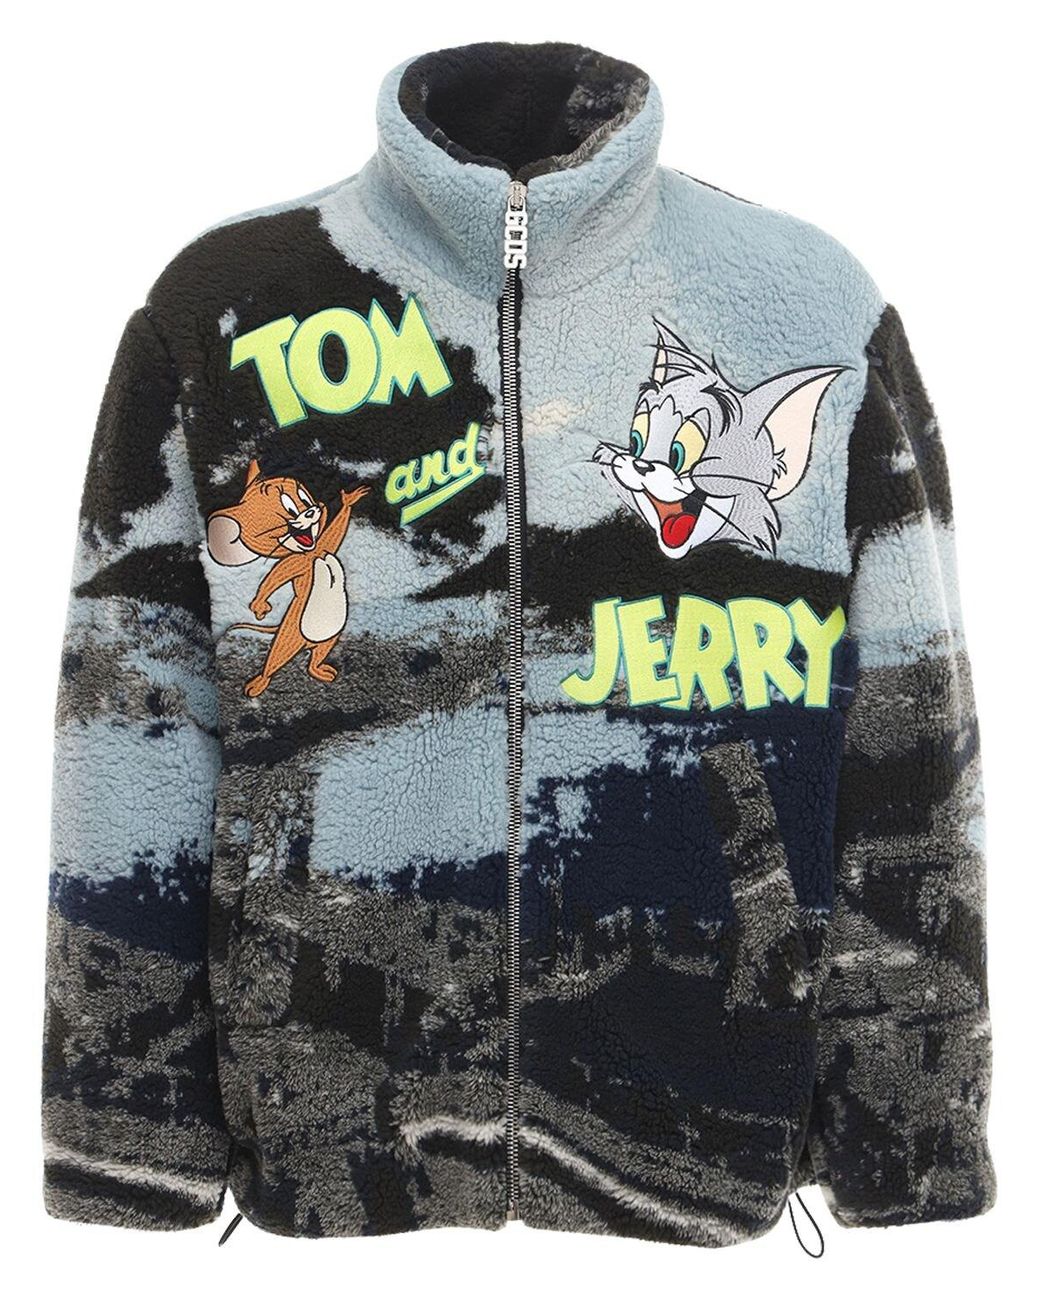  Men's Flight Jacket, Tom and Jerry, Long Sleeve, Zip